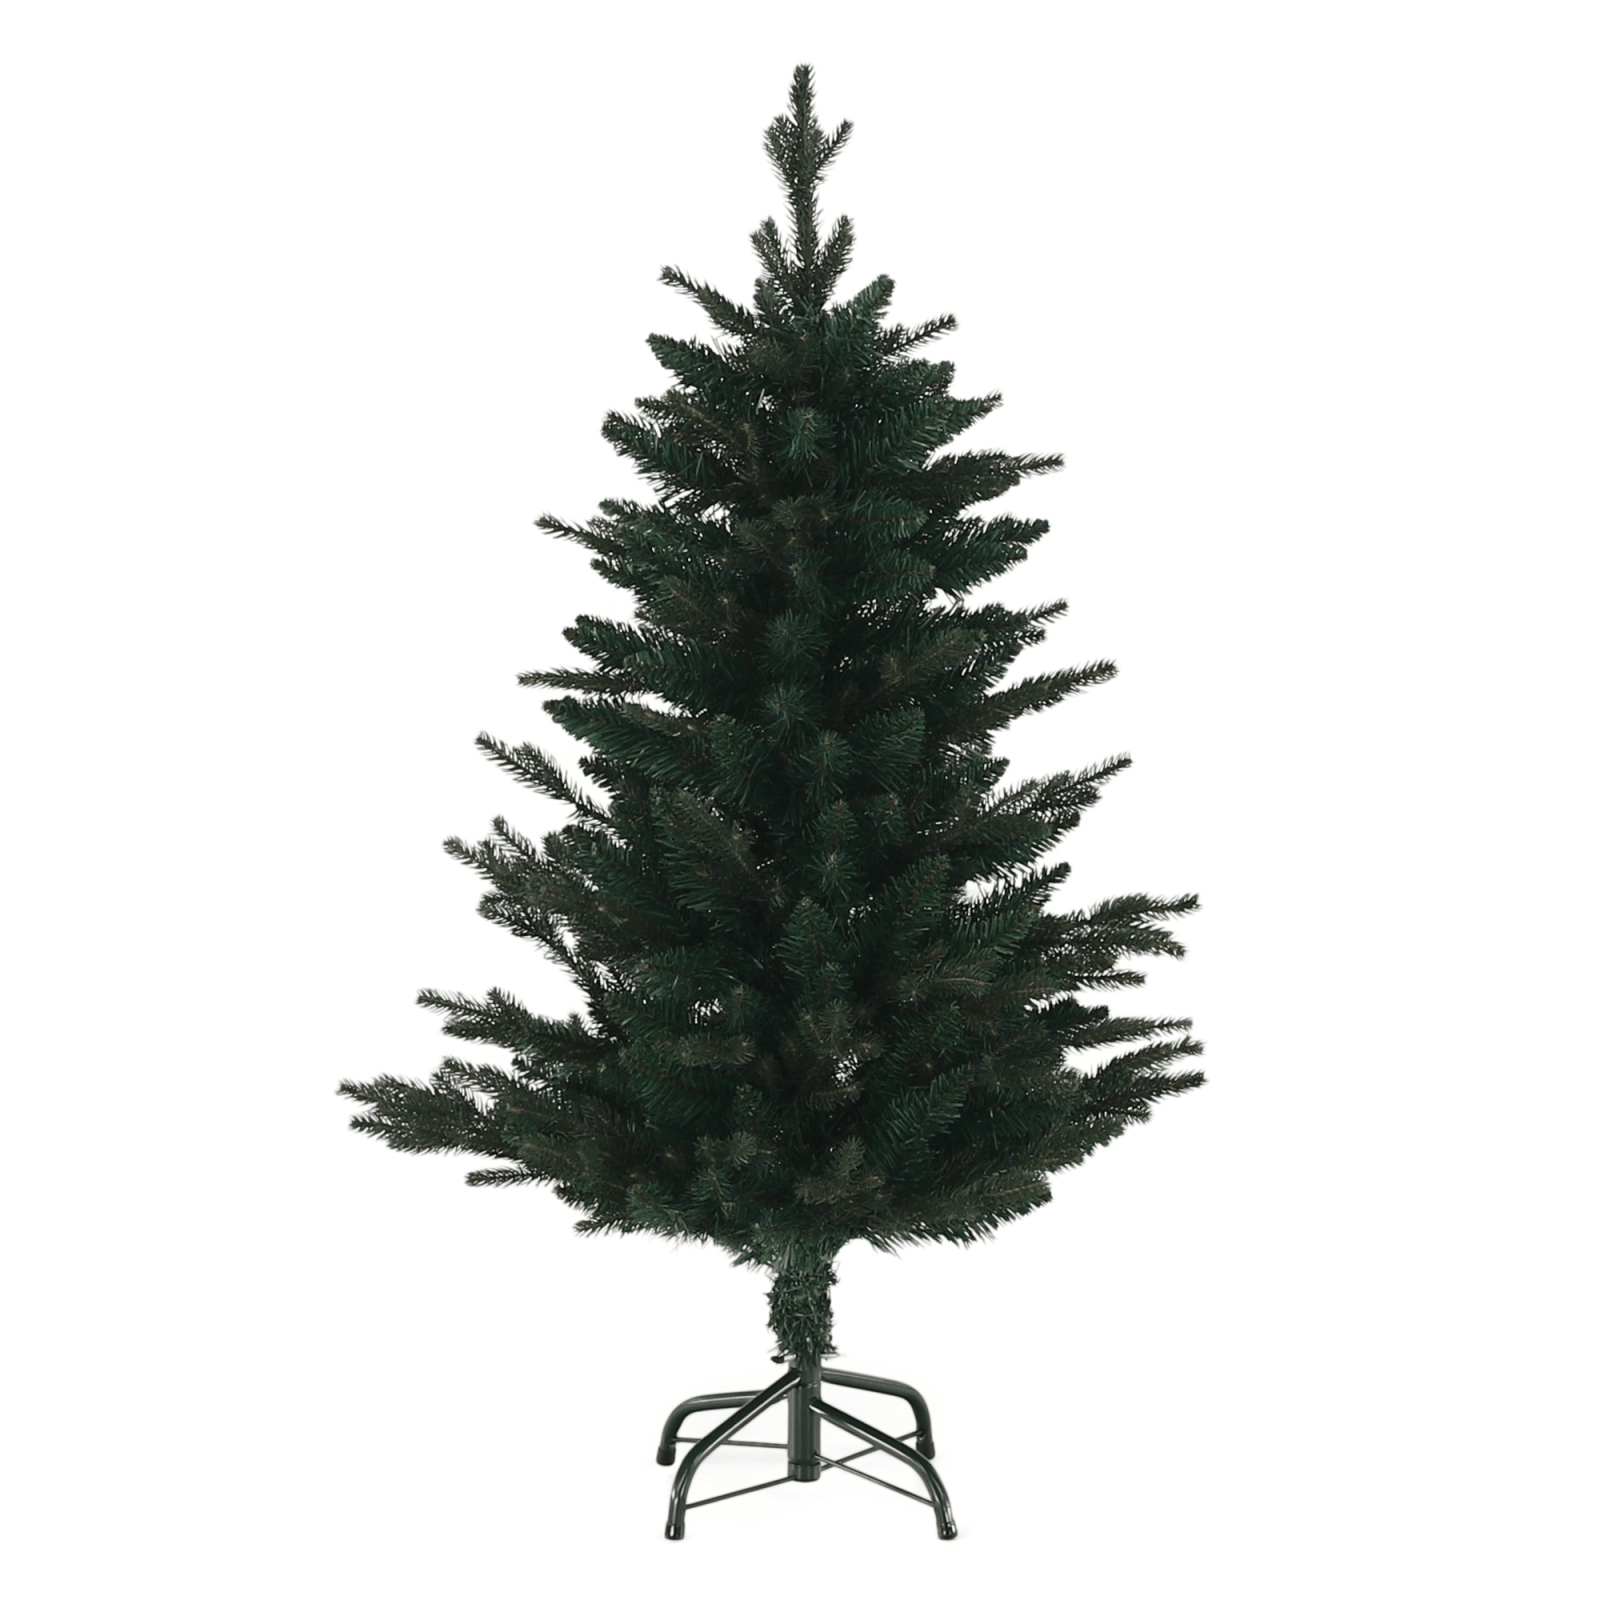 3D karácsonyfa